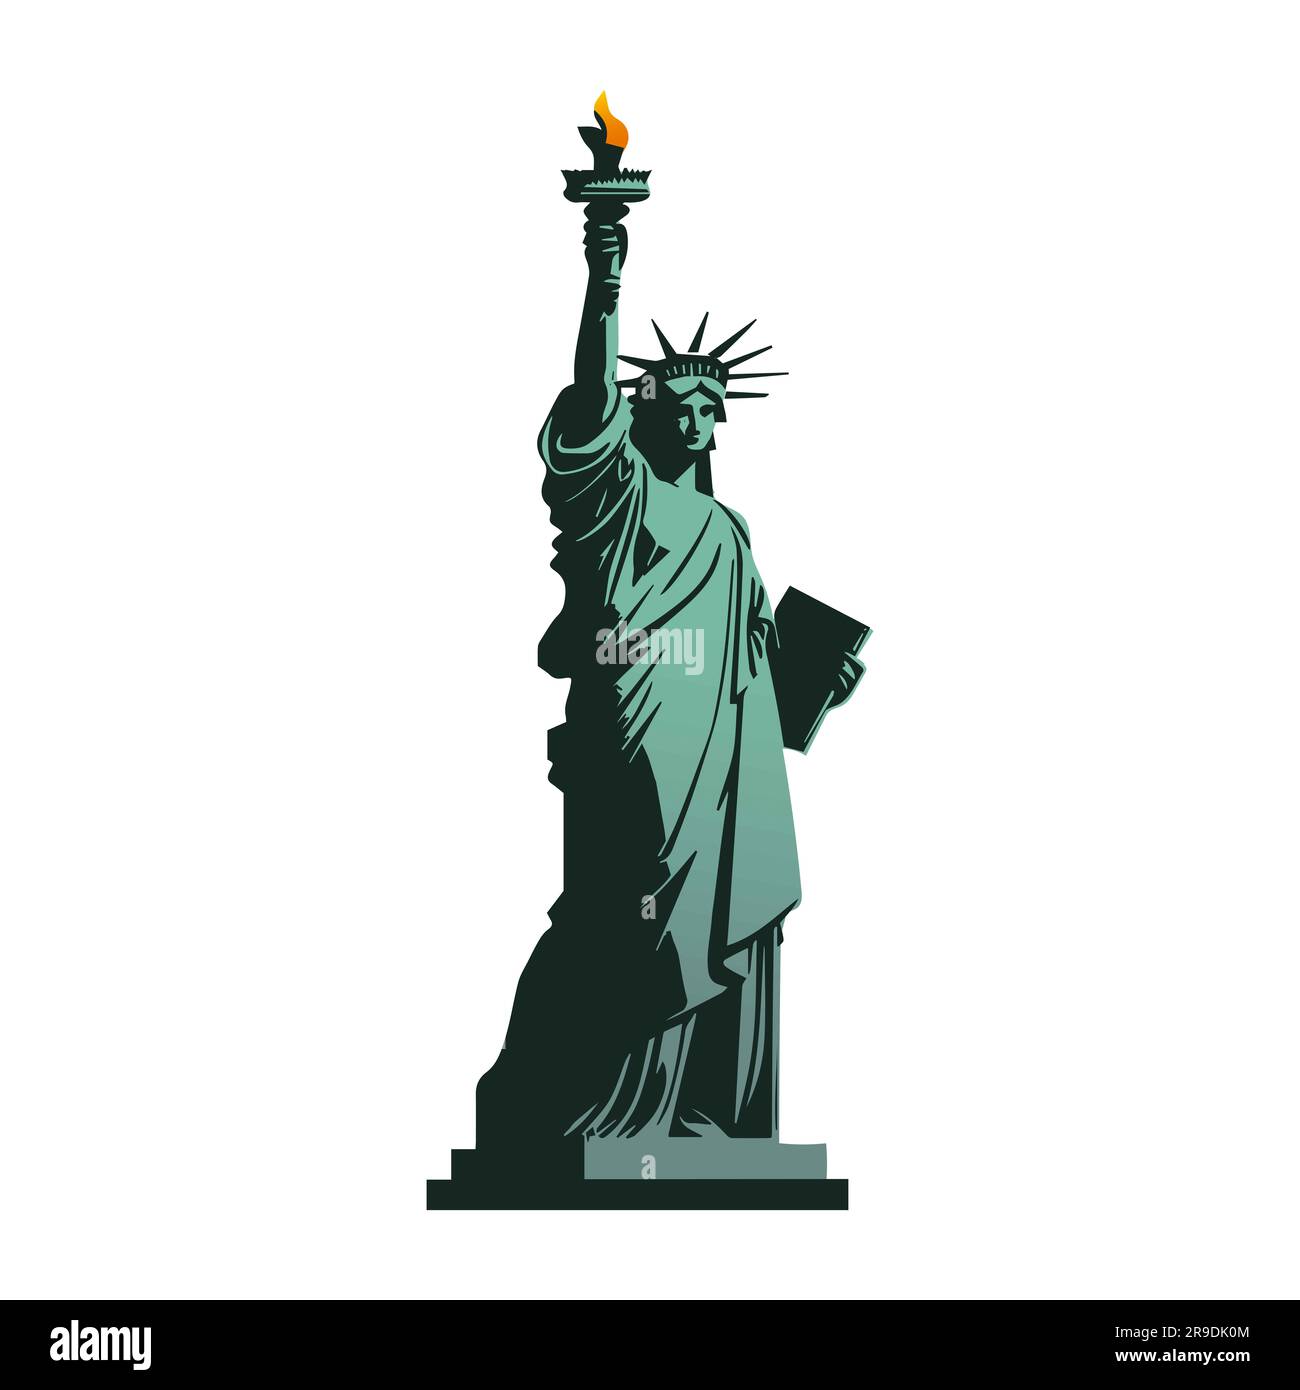 Illustration graphique de la Statue de la liberté. Symbole américain. New York, États-Unis Banque D'Images